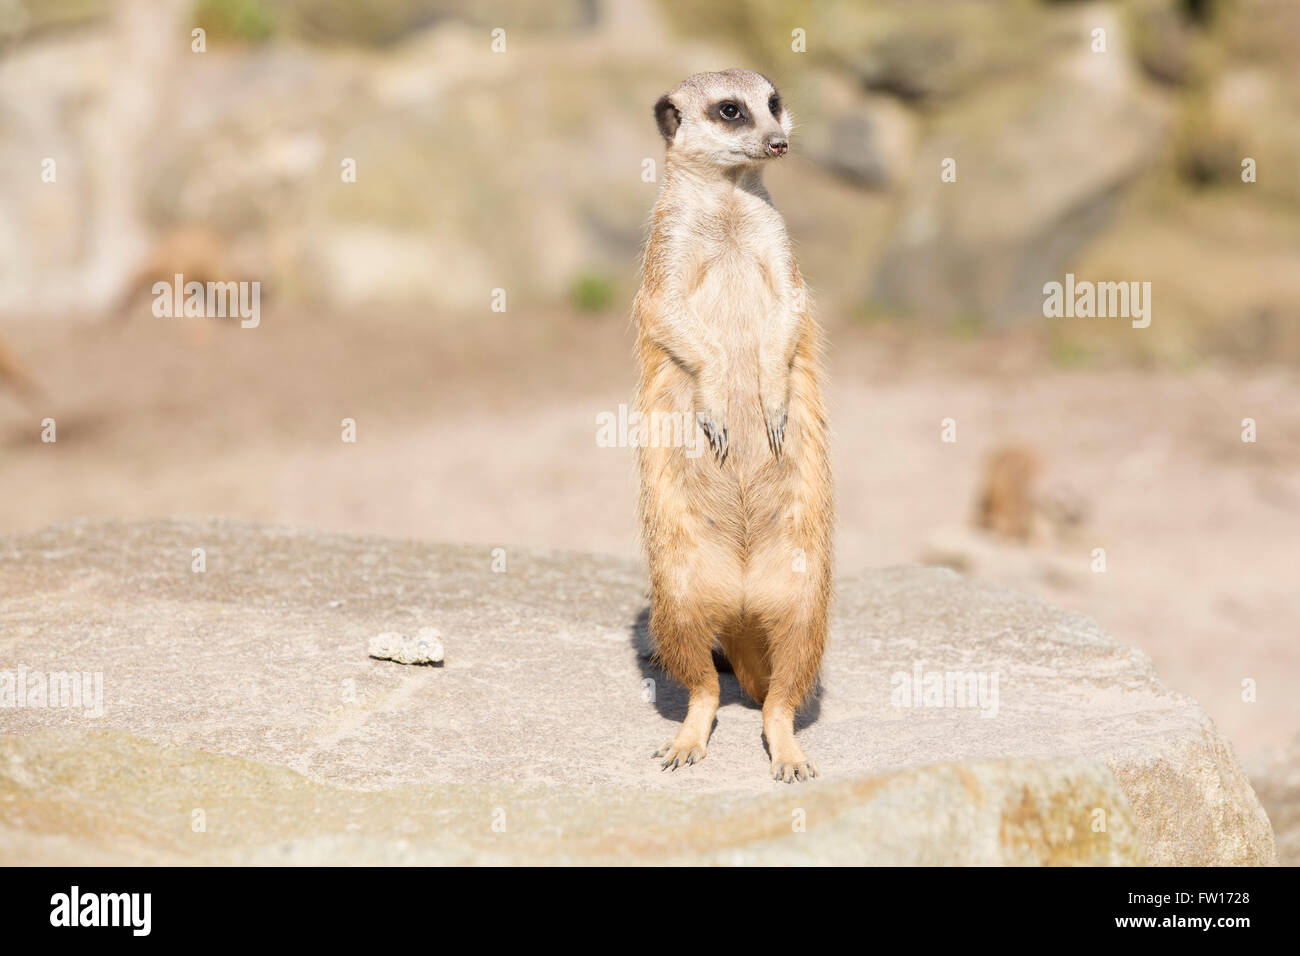 Un meerkat (Suricata suricatta) se dresse sur ses pattes arrière. L'animal est aussi connu sous le nom de suricate. Banque D'Images